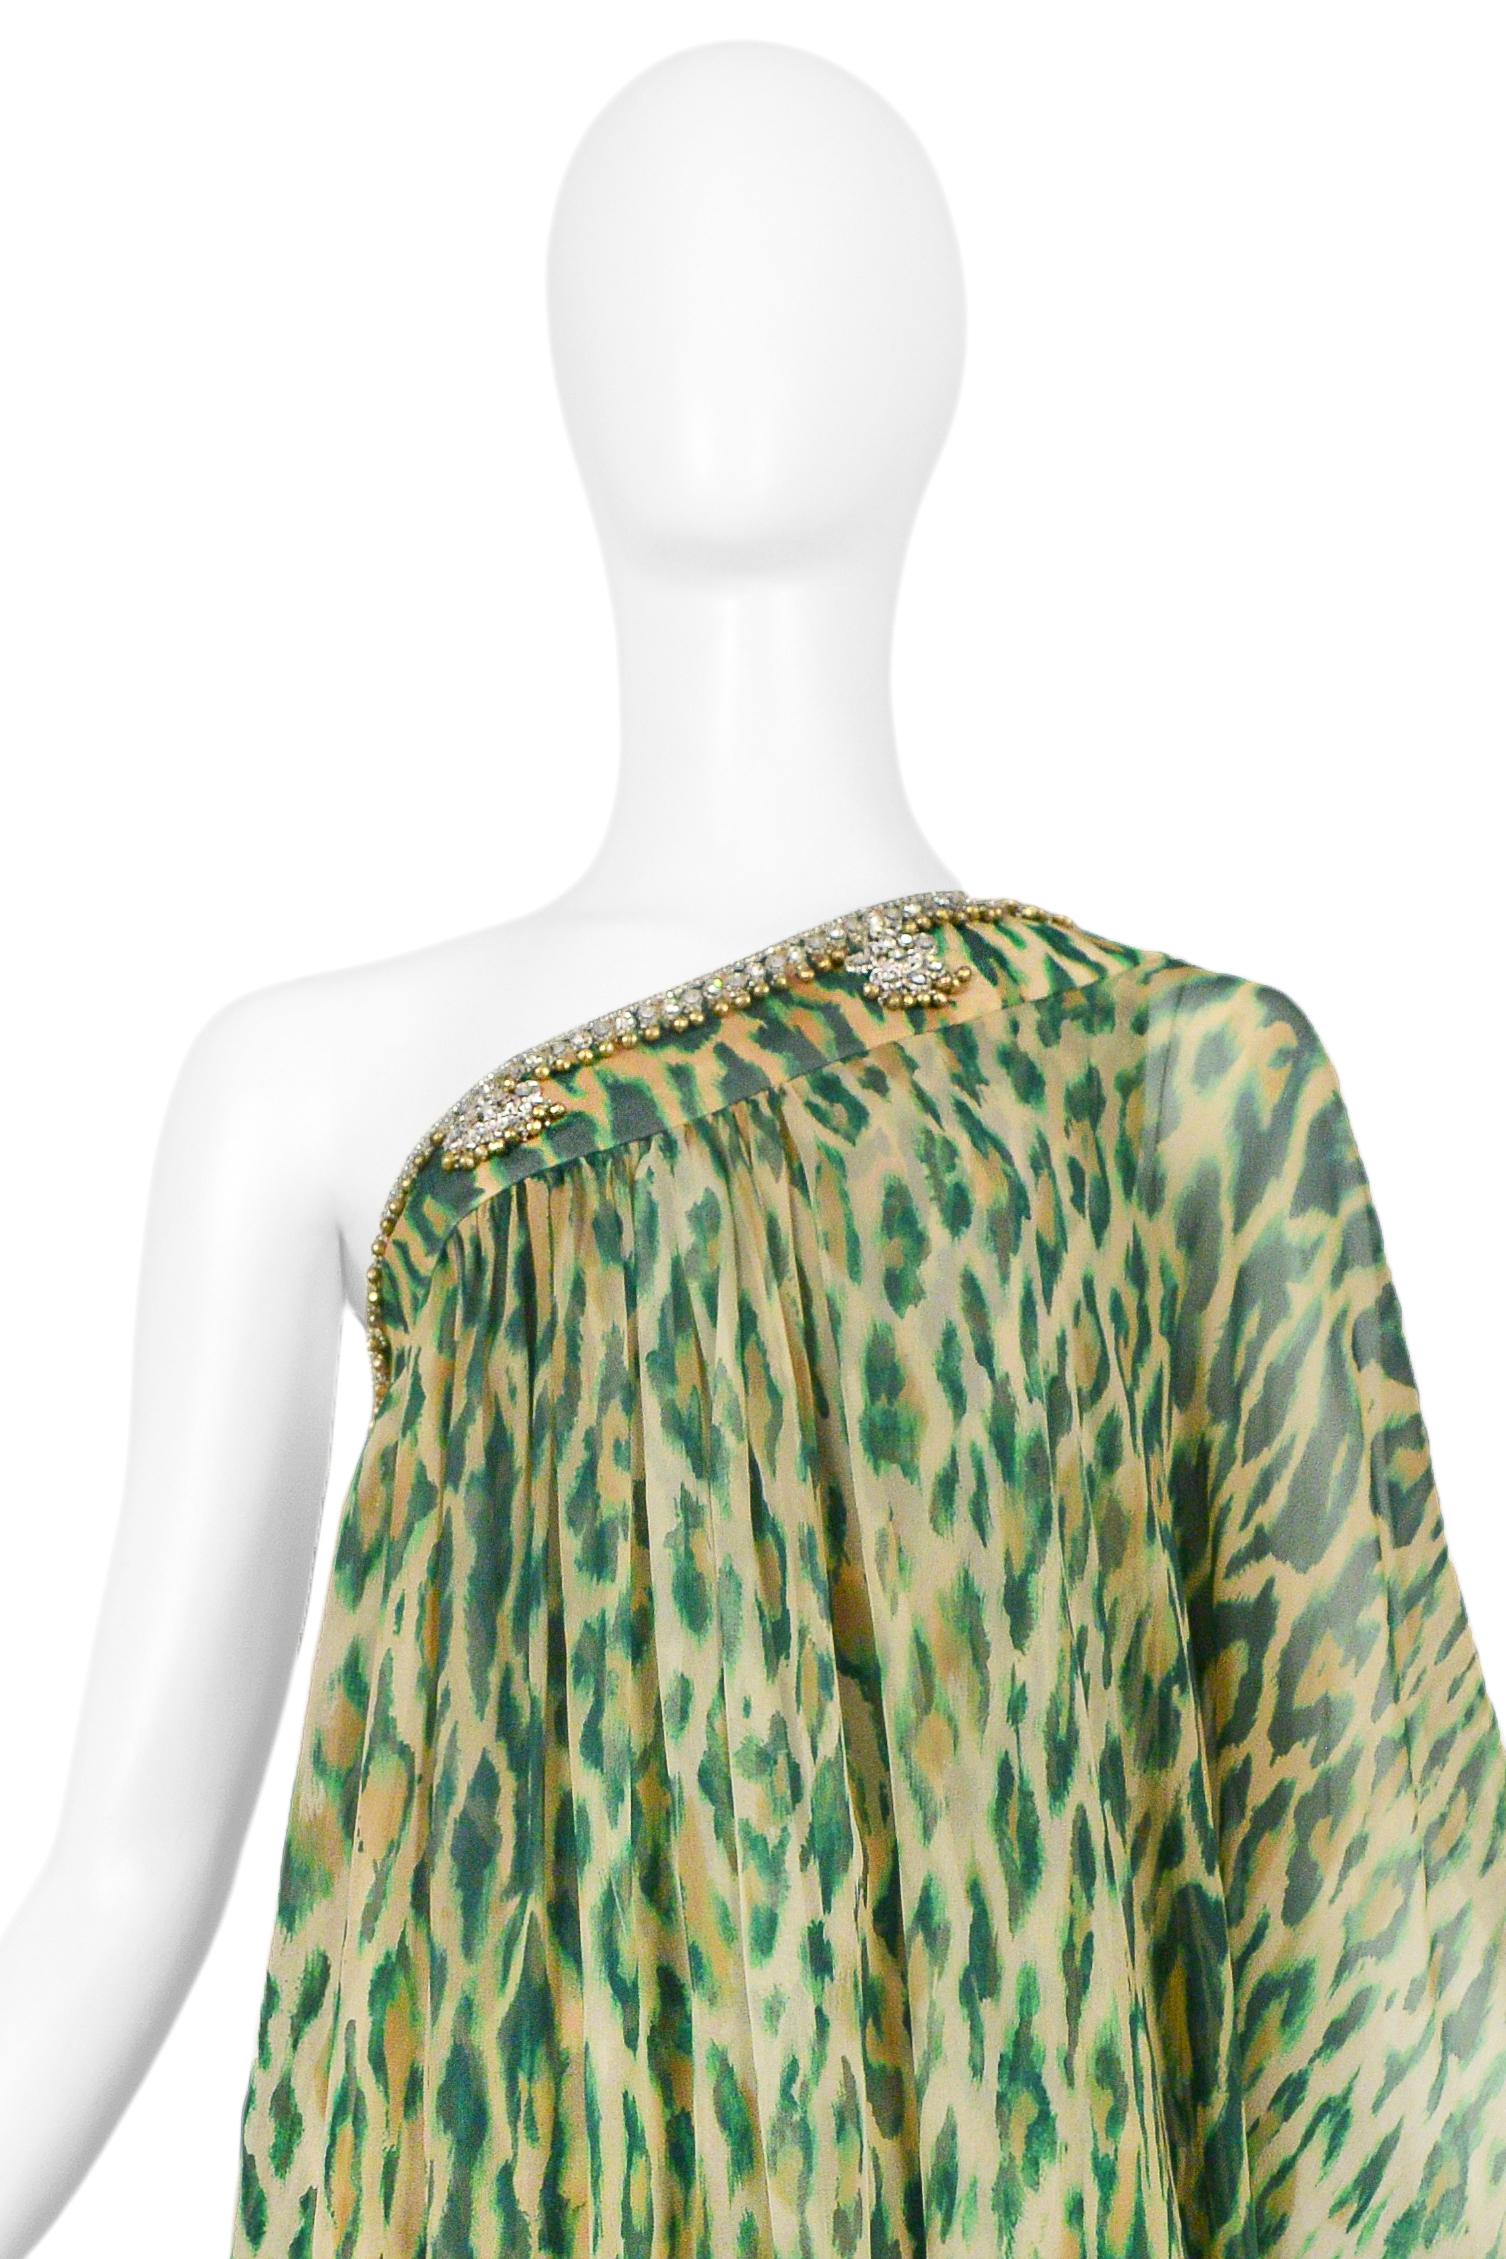 Christian Dior Green Leopard One Shoulder Sari Dress 2008 For Sale 2